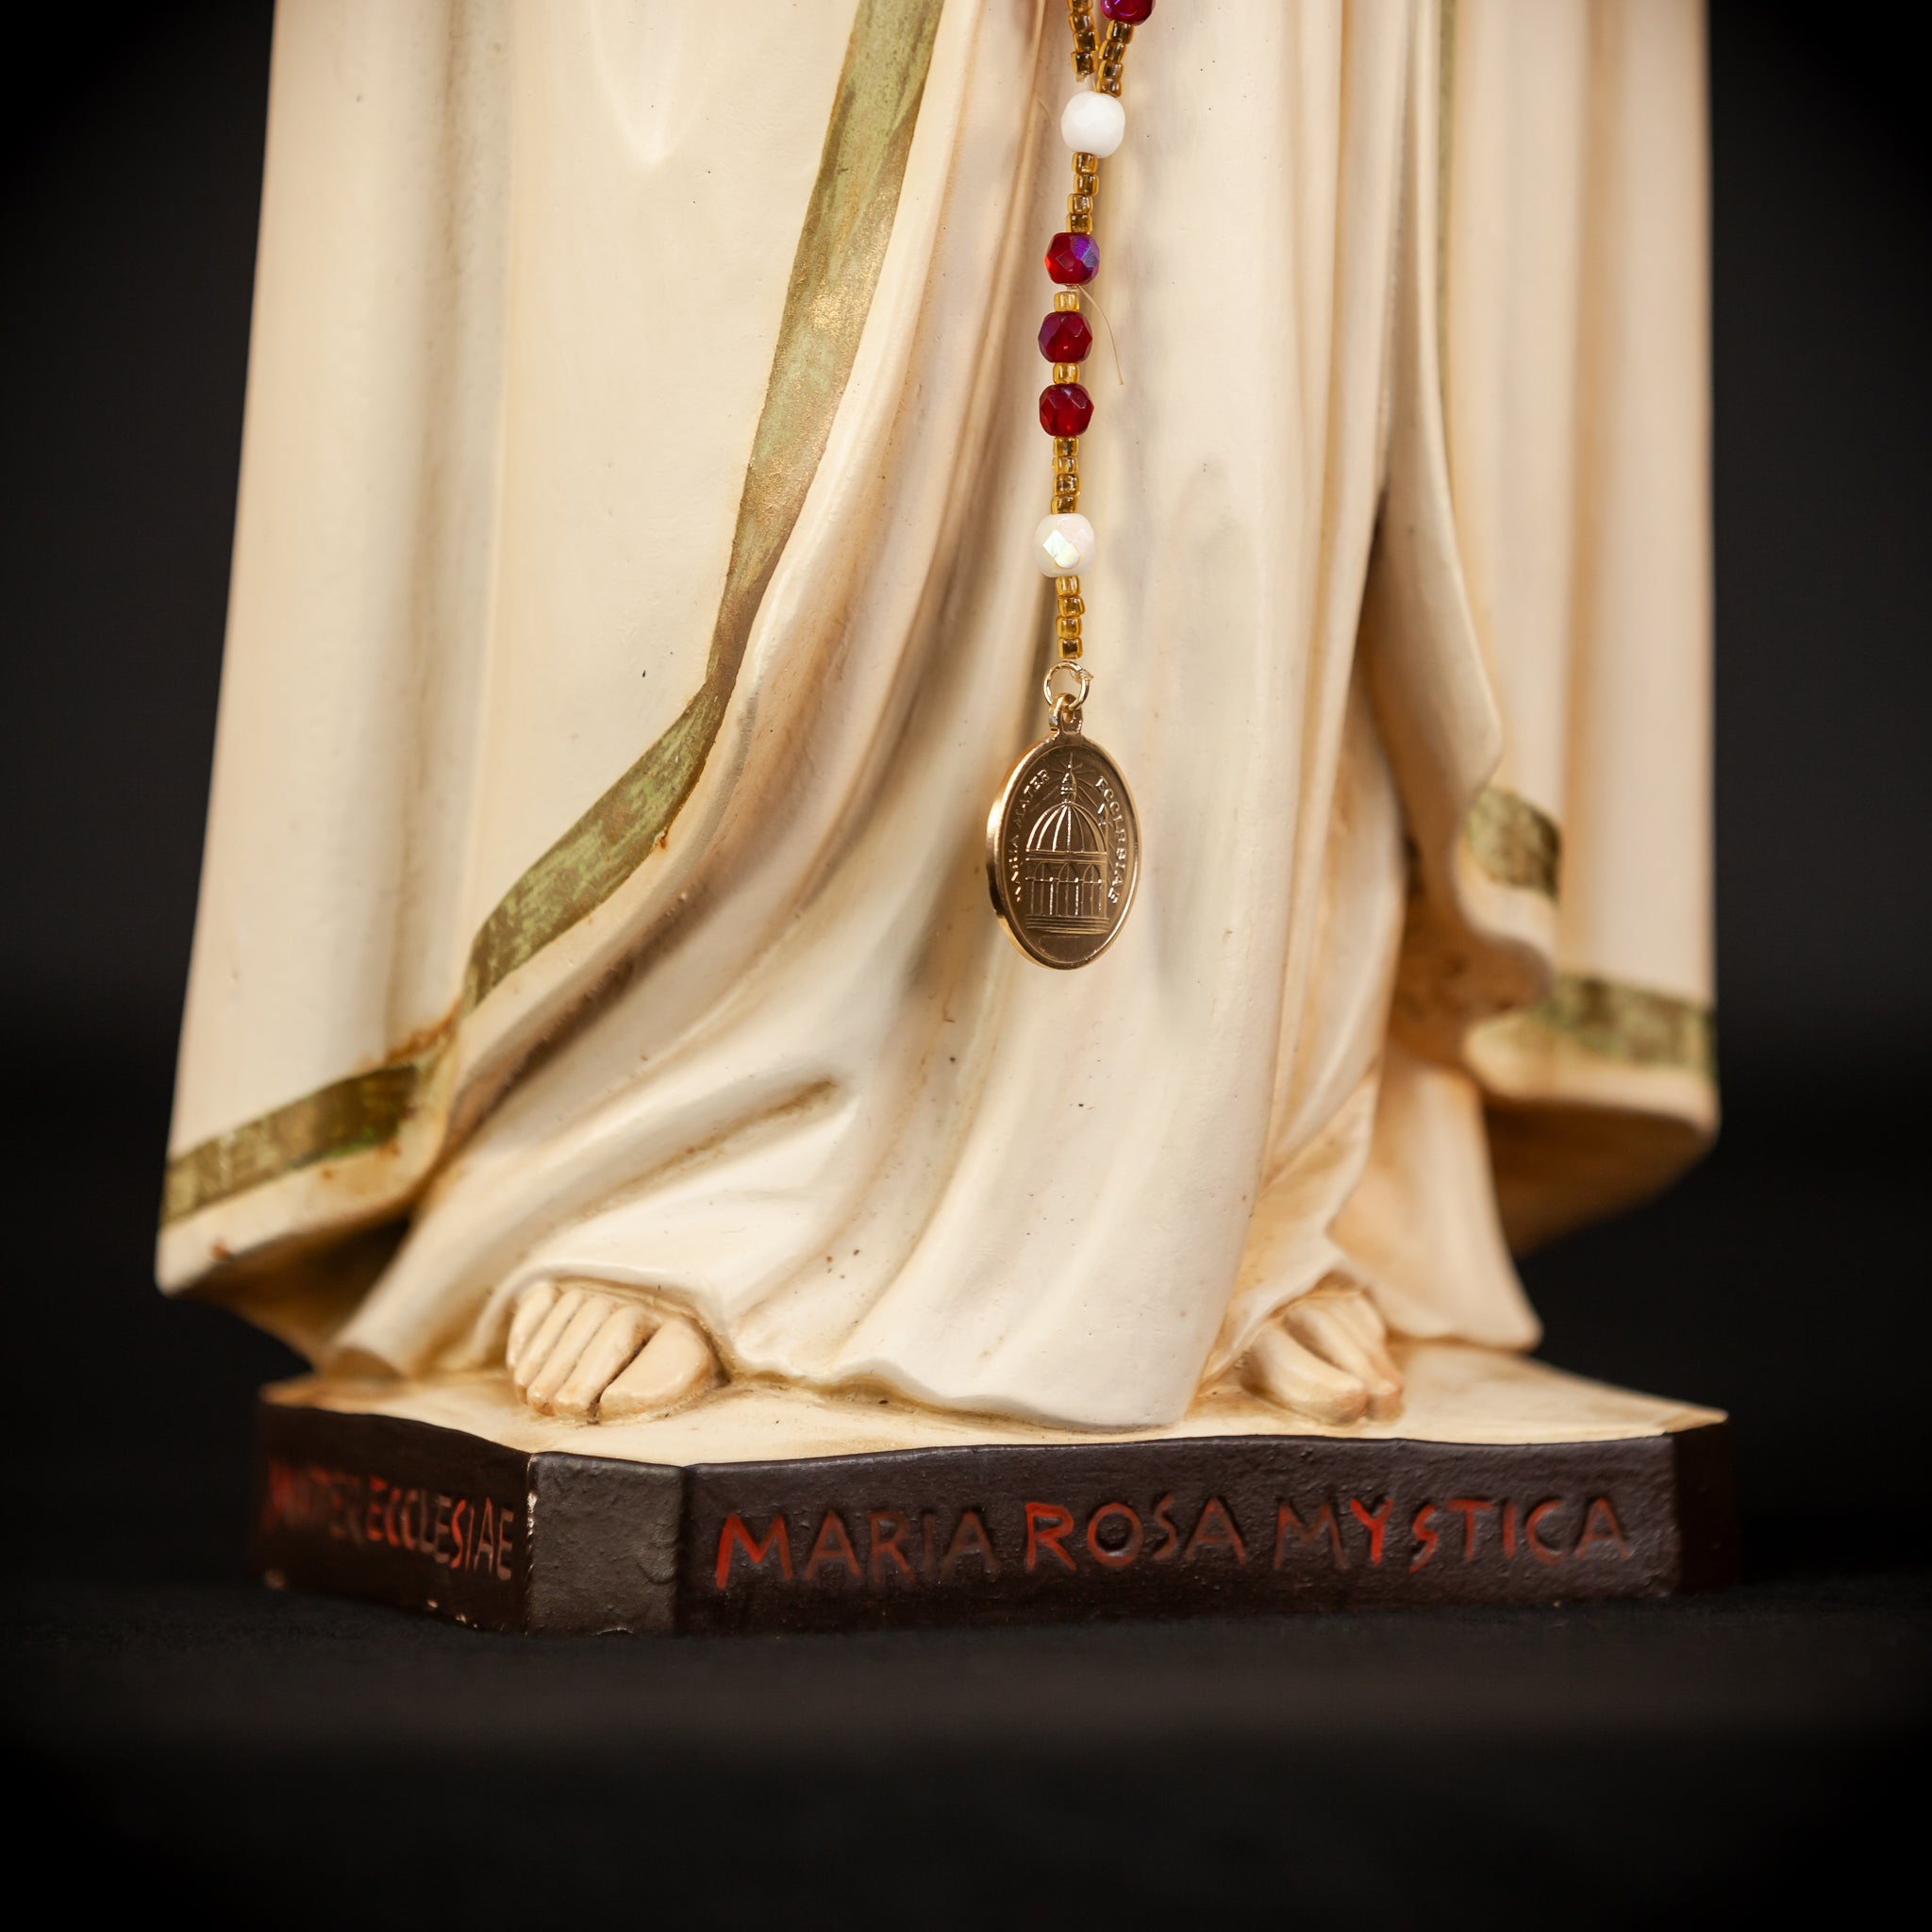 Maria Rosa Mystica Wooden Statue | 18.9" / 48 cm